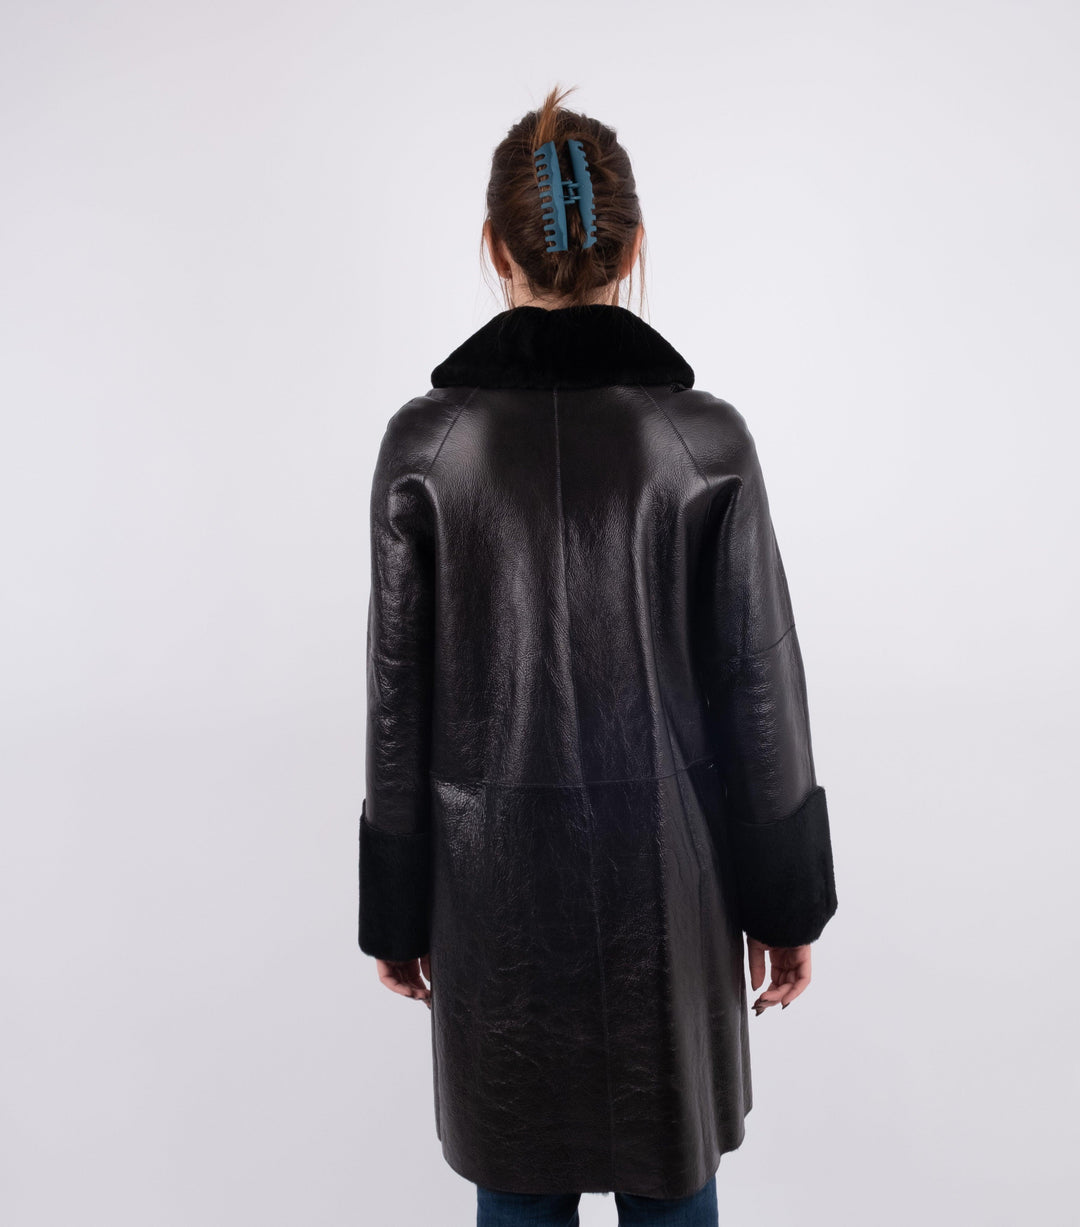 Black Leather Fur Coat - Volver